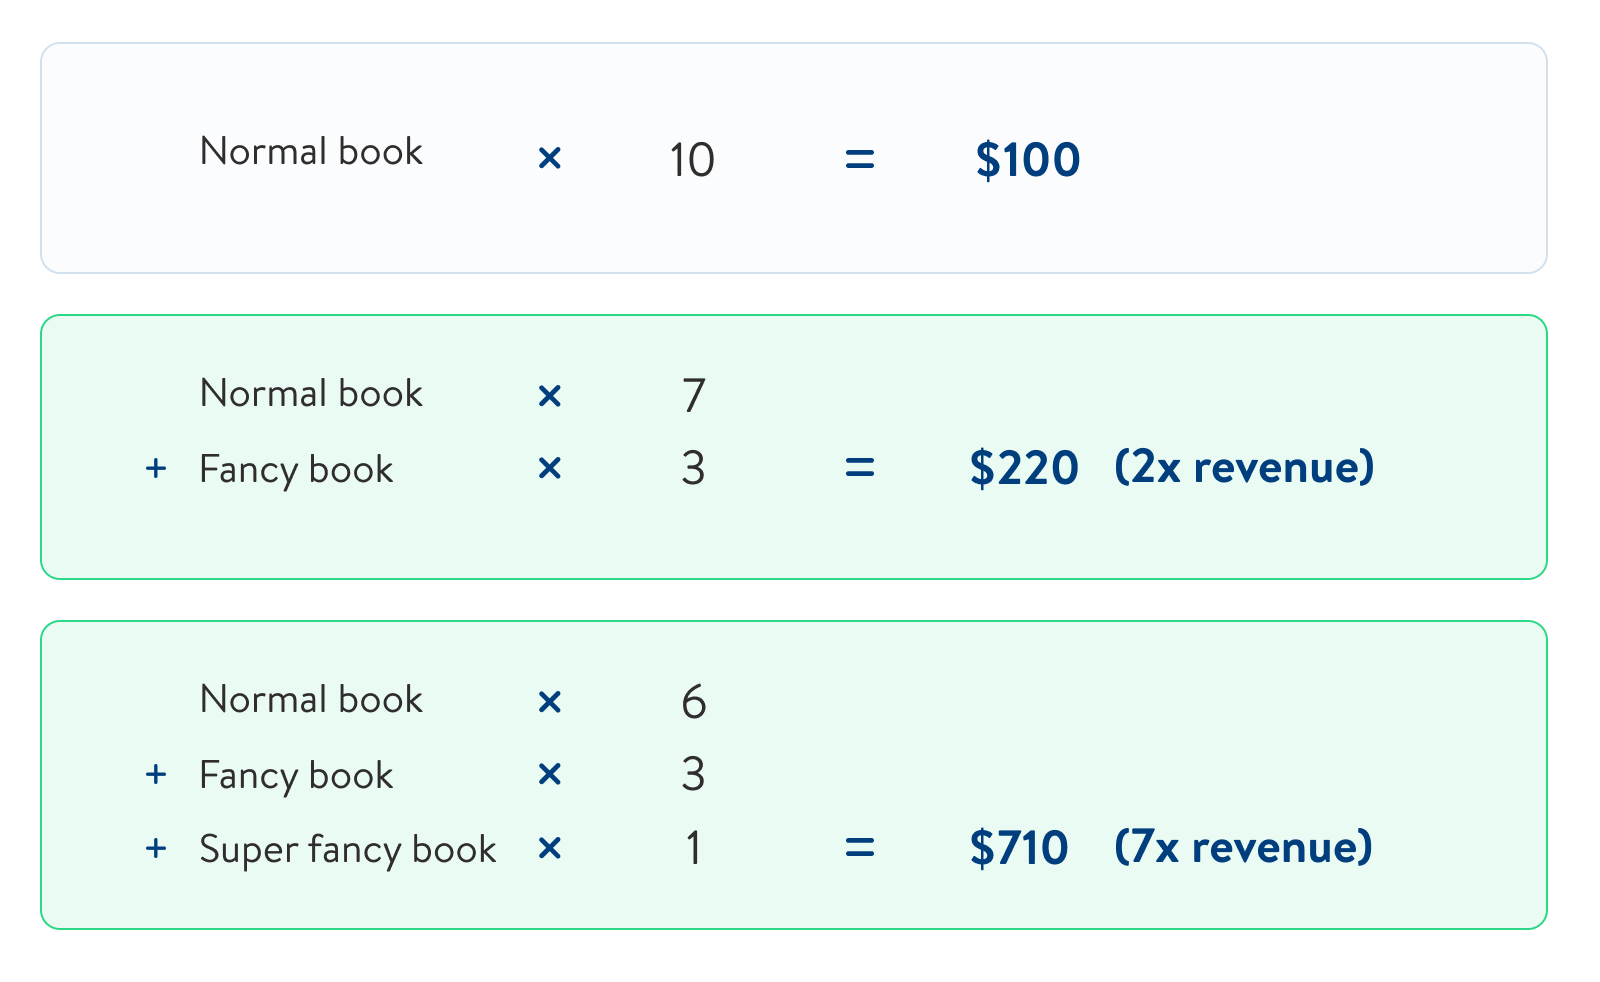 Normal book $10 x 10 = 100; Normal Book x 7 + Fancy Book x 3 = $220; Normal Book x 6 + Fancy Book x 3 + Super Fancy Book x 1 = $710